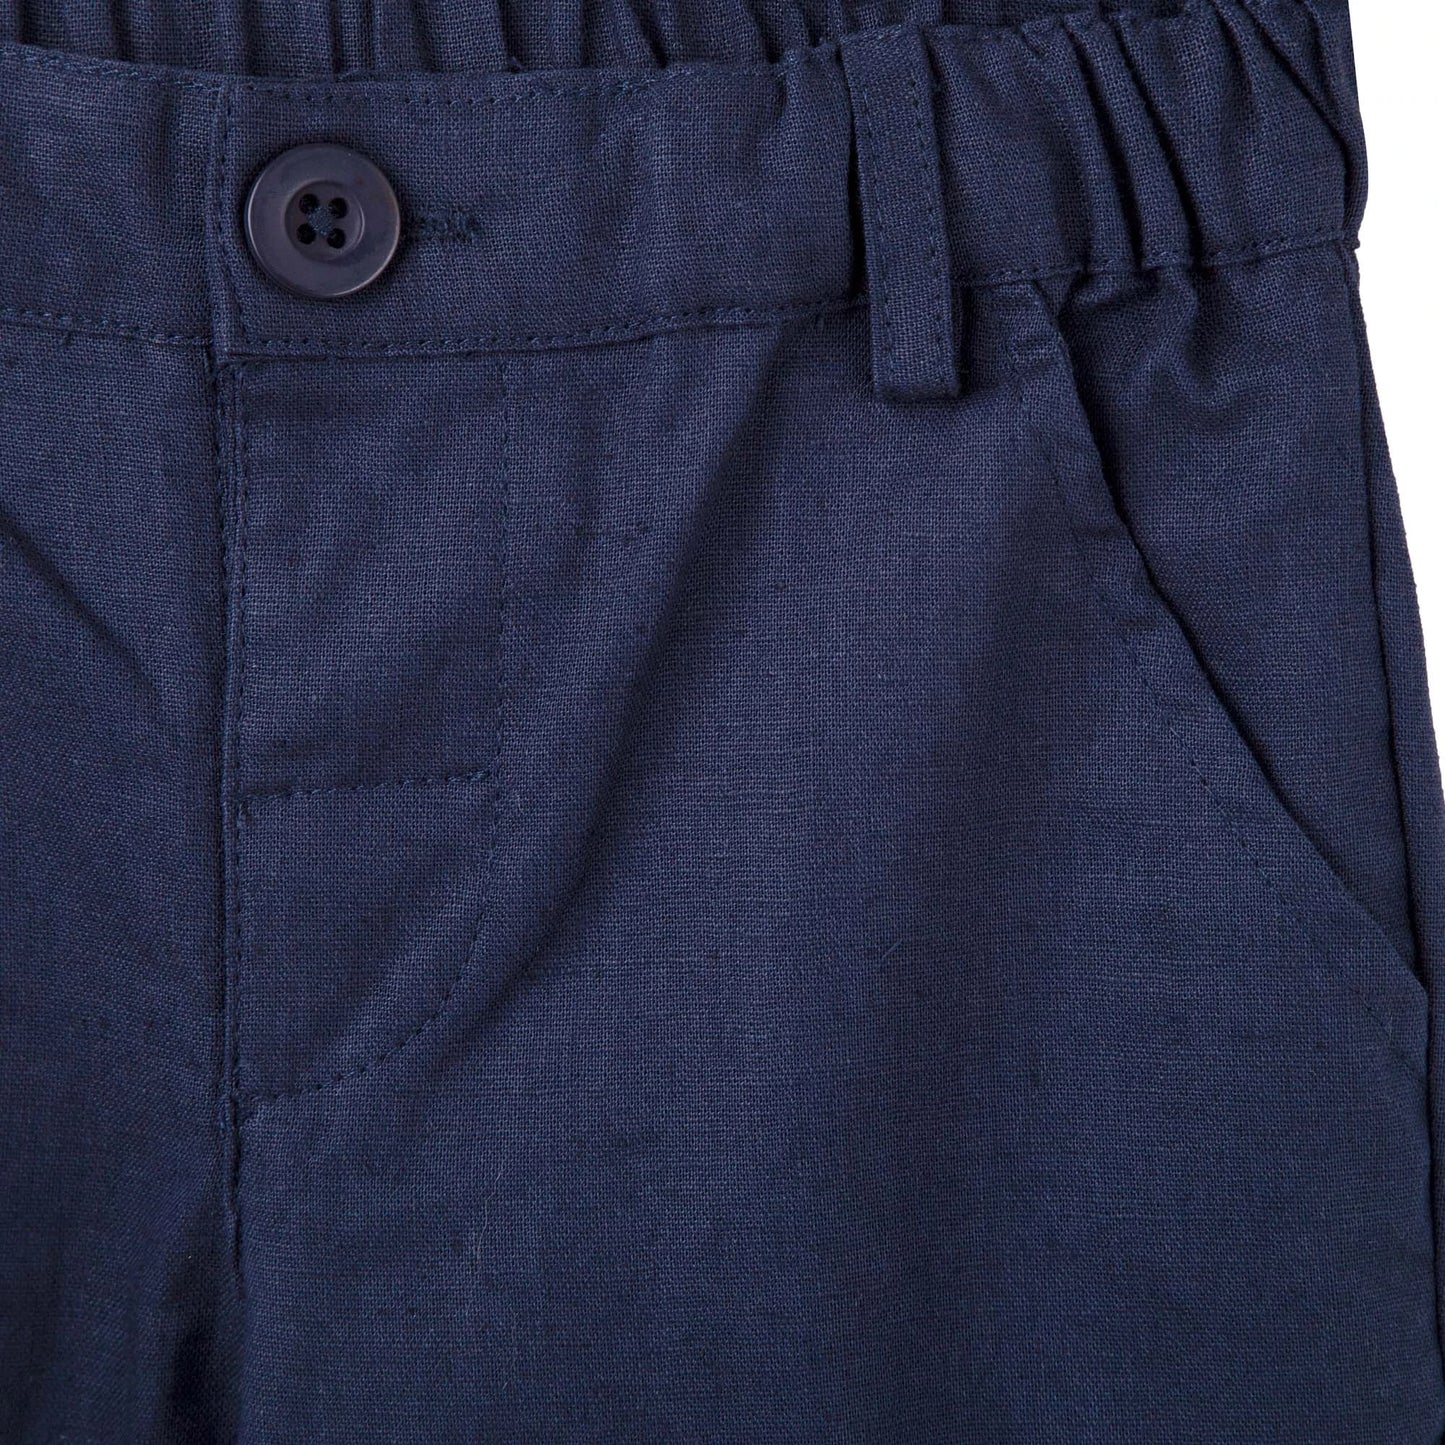 Designer Kidz | Finley Linen Pants | Navy